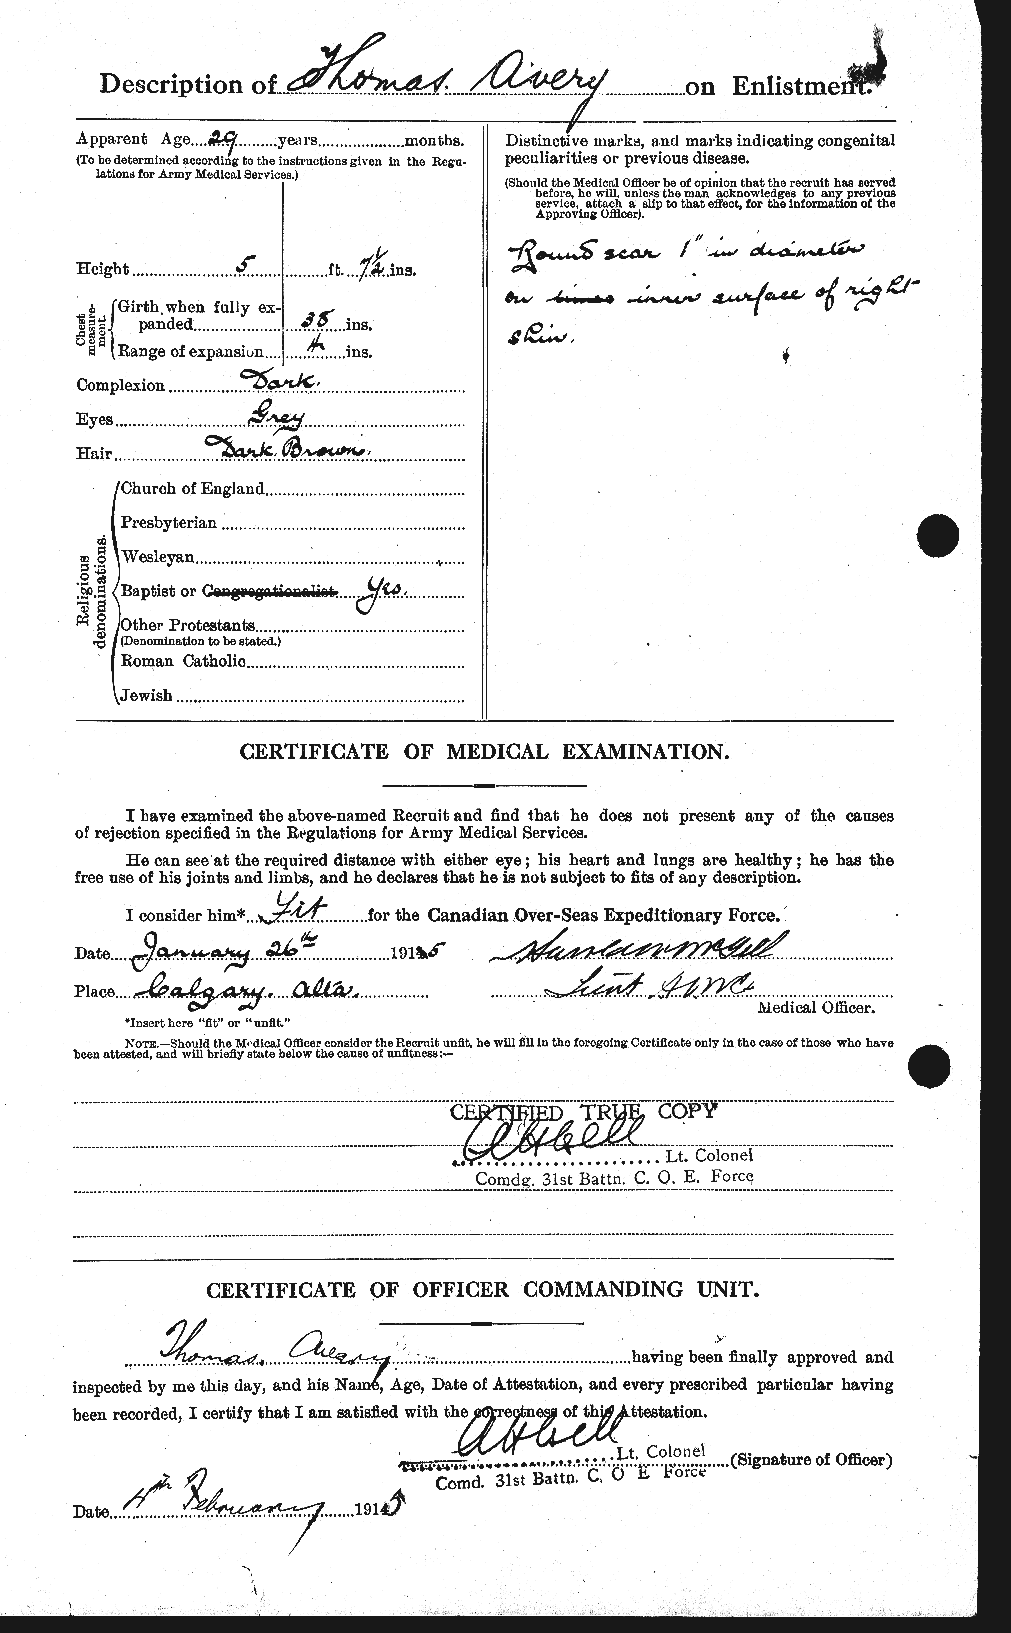 Dossiers du Personnel de la Première Guerre mondiale - CEC 215089b